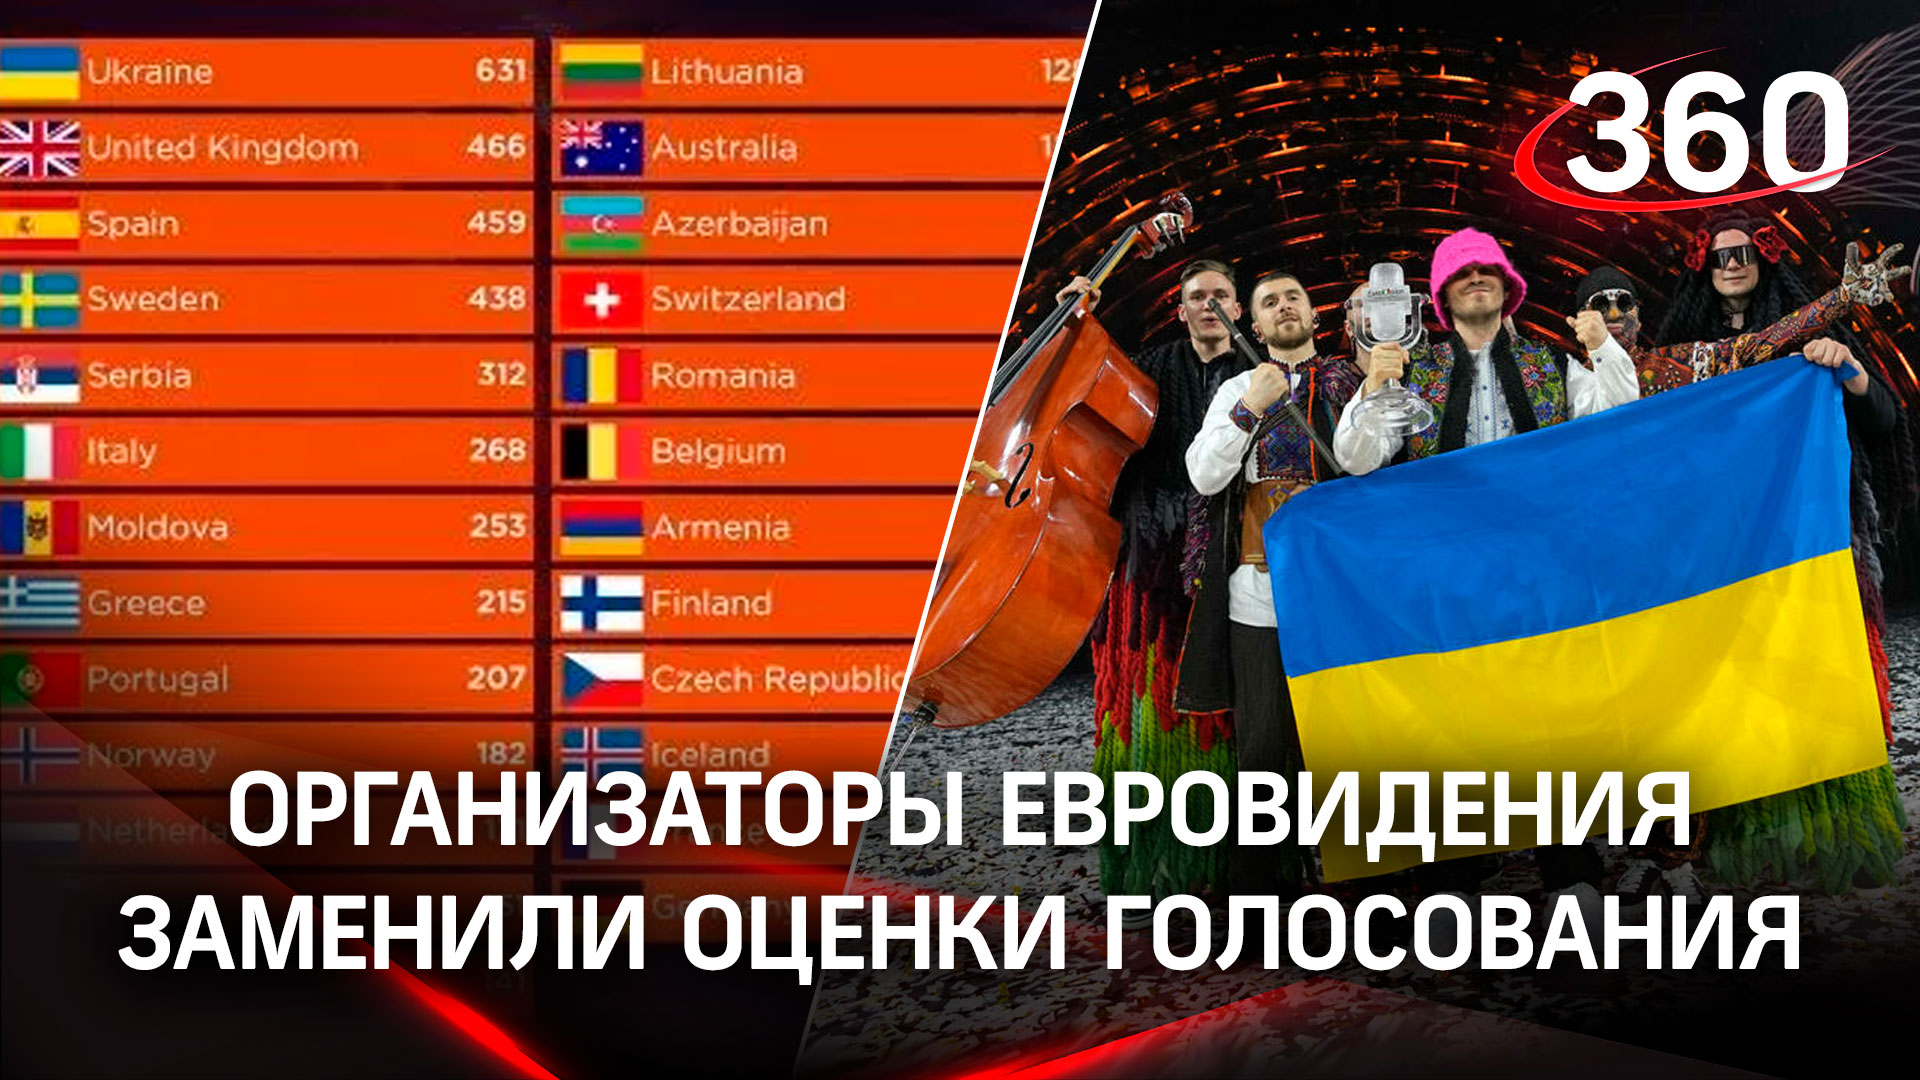 Организаторы Евровидения подменили результаты голосования? Кто не смог отдать баллы Украине?